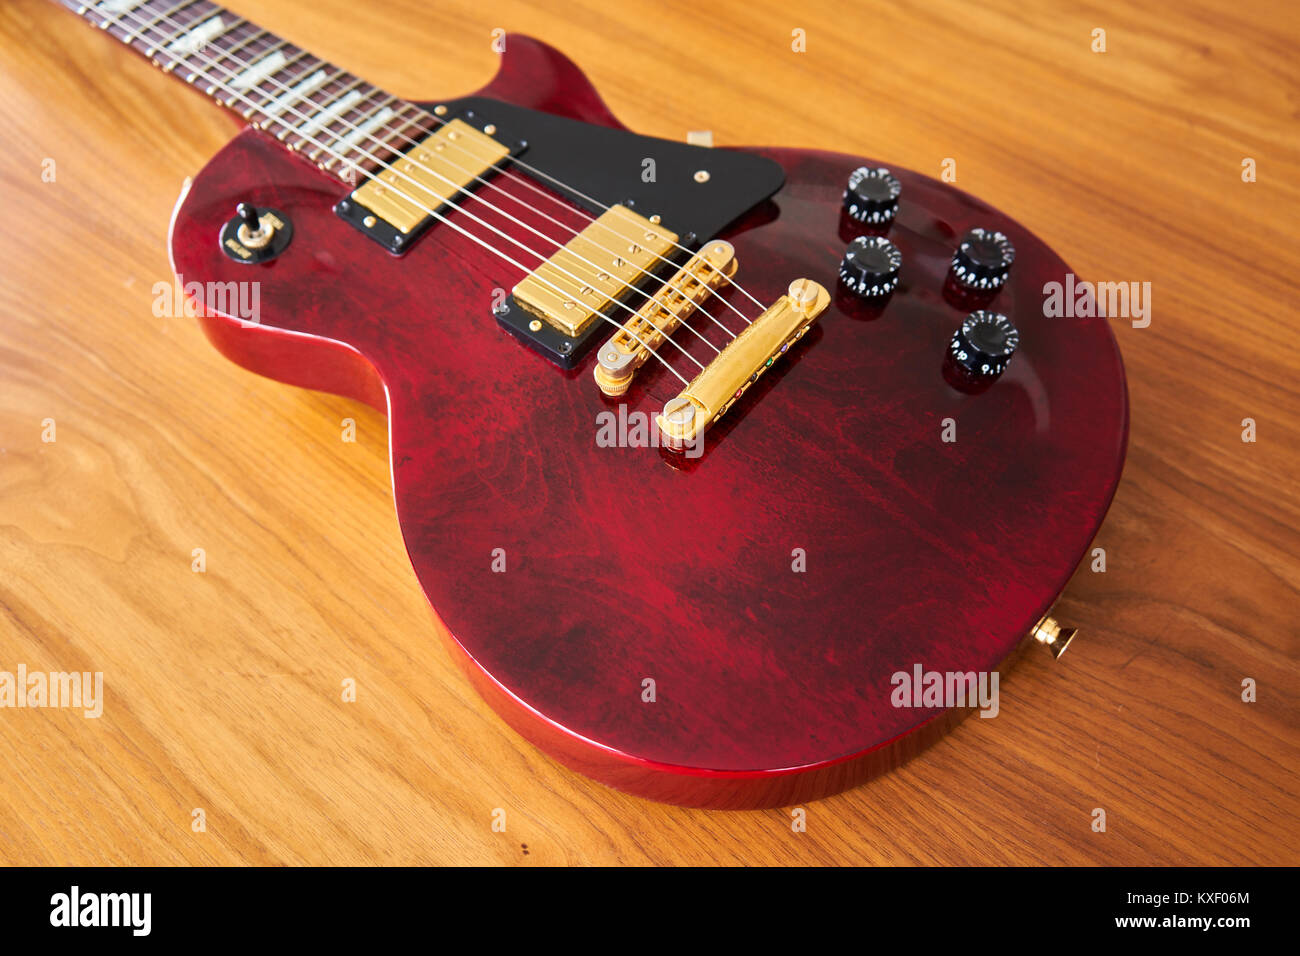 Glänzend Weinrot Gitarre mit goldene Hardware auf einem Holztisch, Seitenansicht Stockfoto